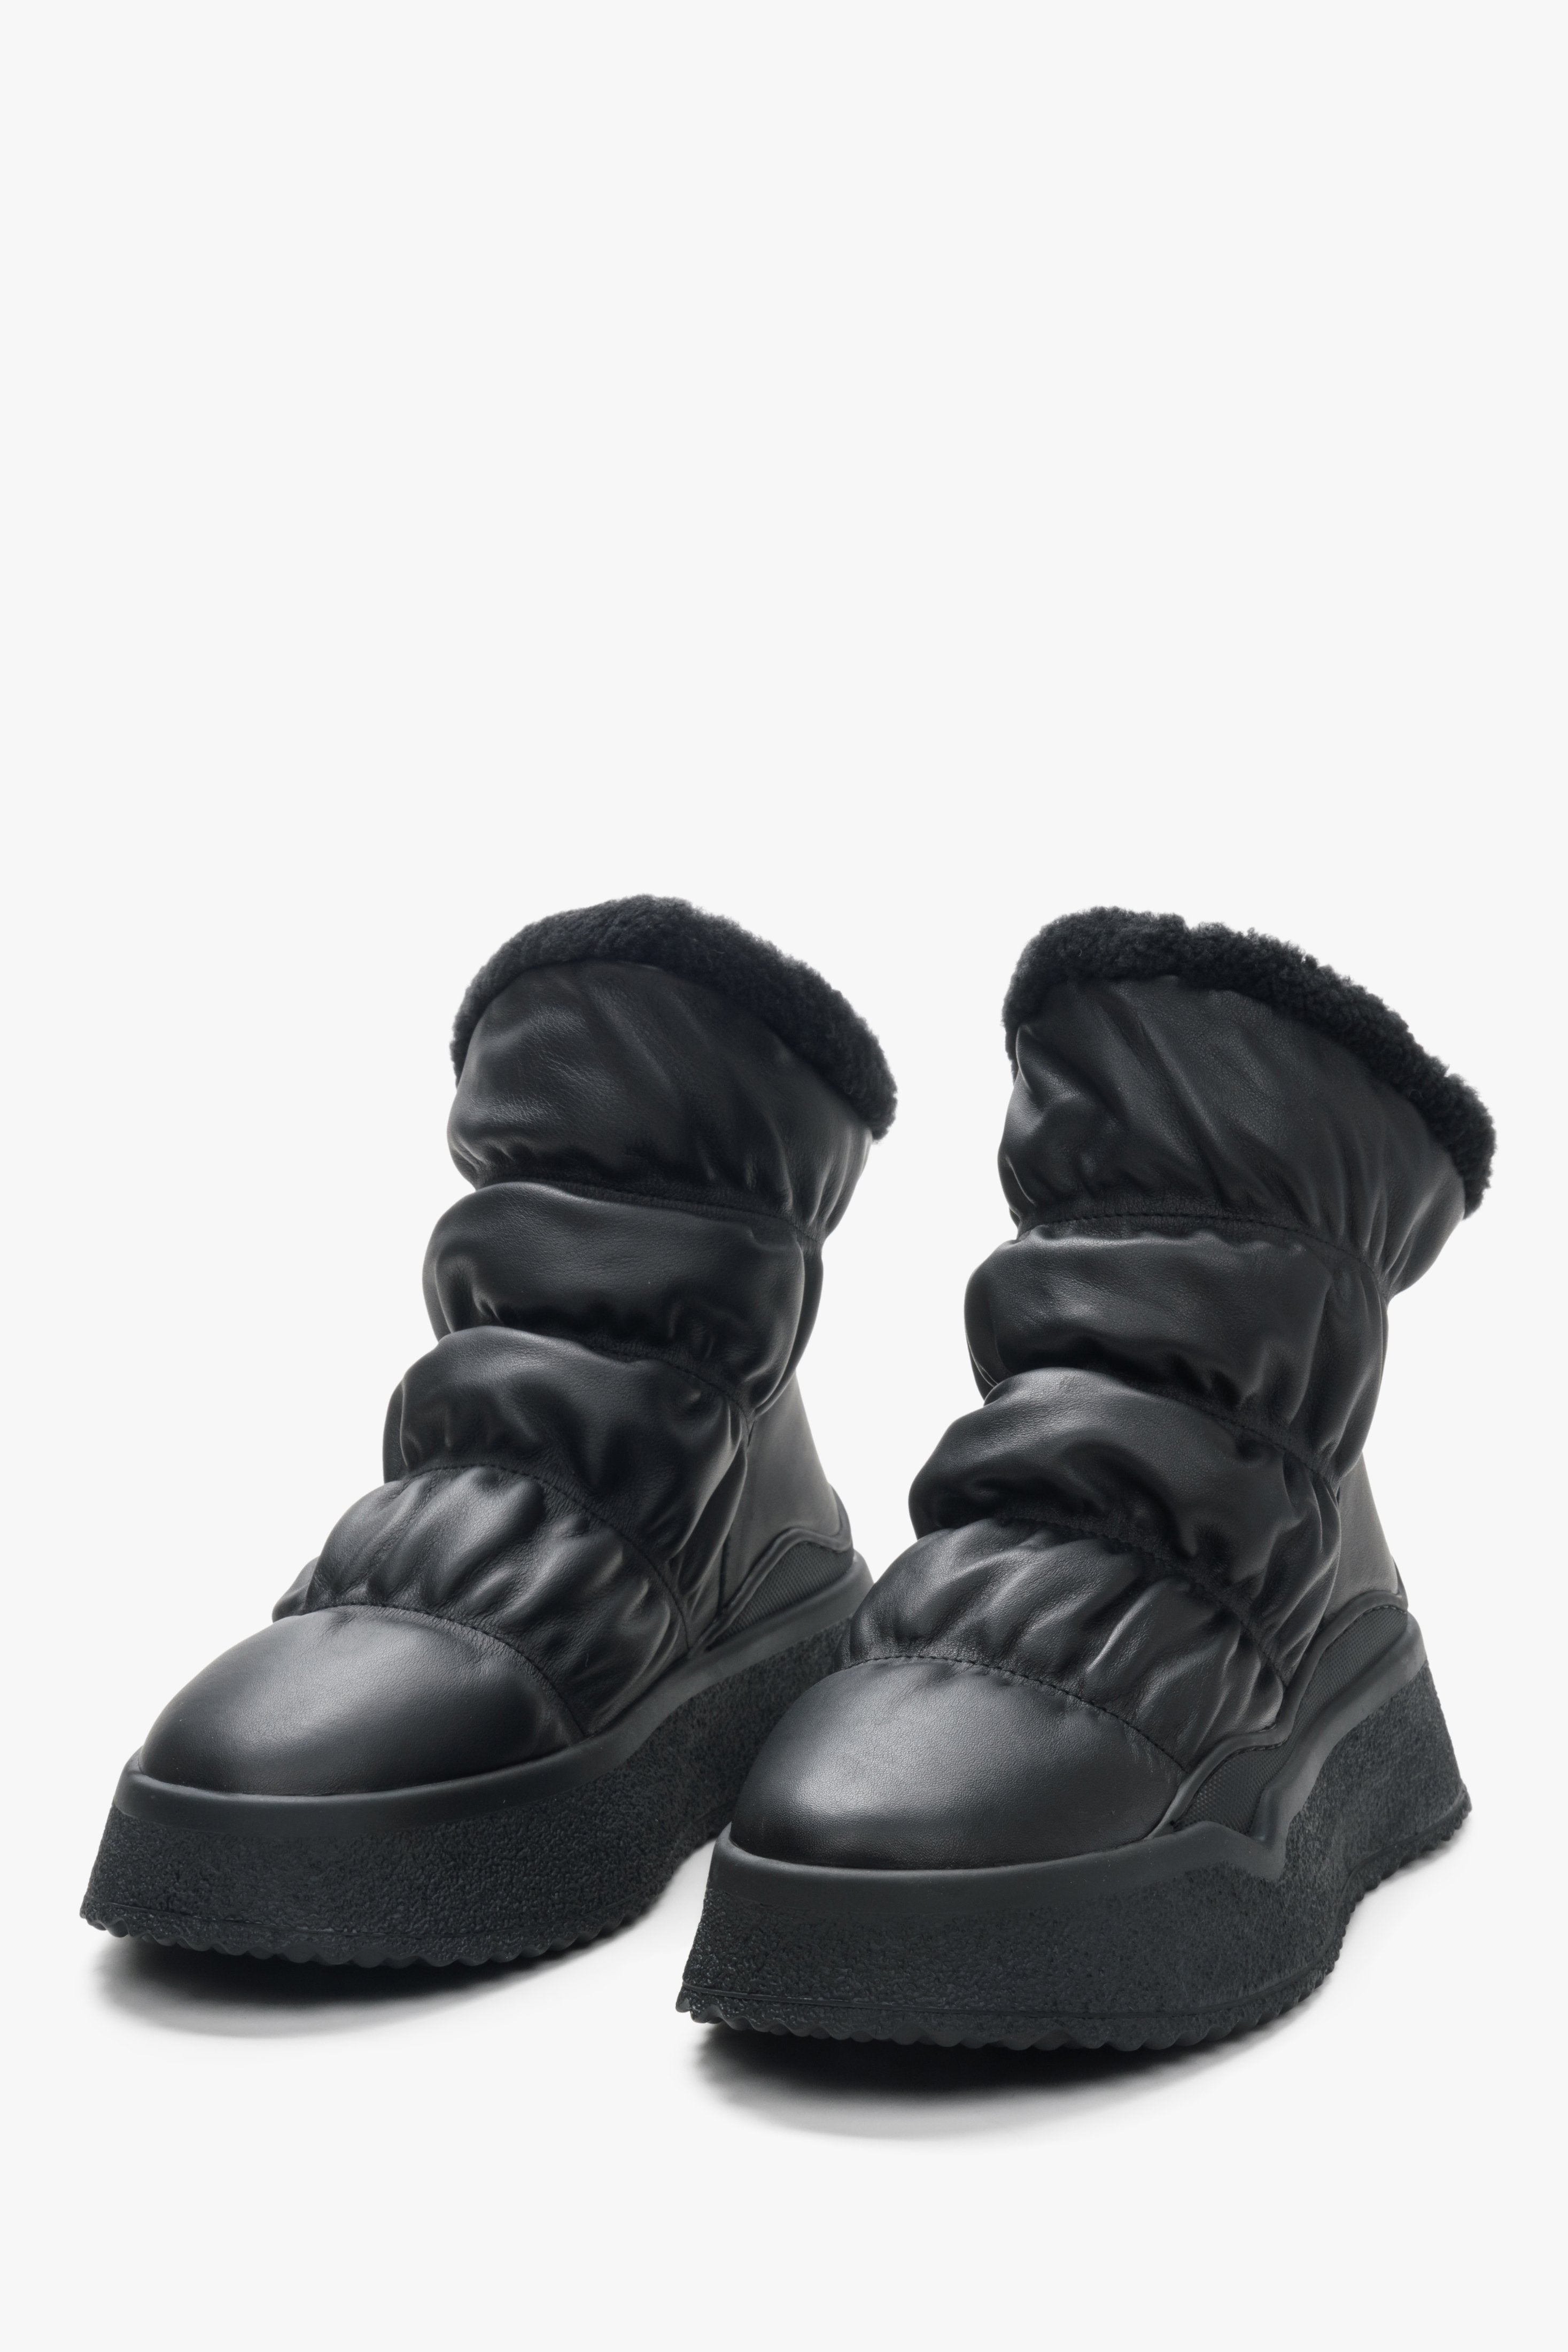 Czarne śniegowce damskie ze skóry naturalnej z futrzanym wsadem Estro - zbliżenie na czubek buta.